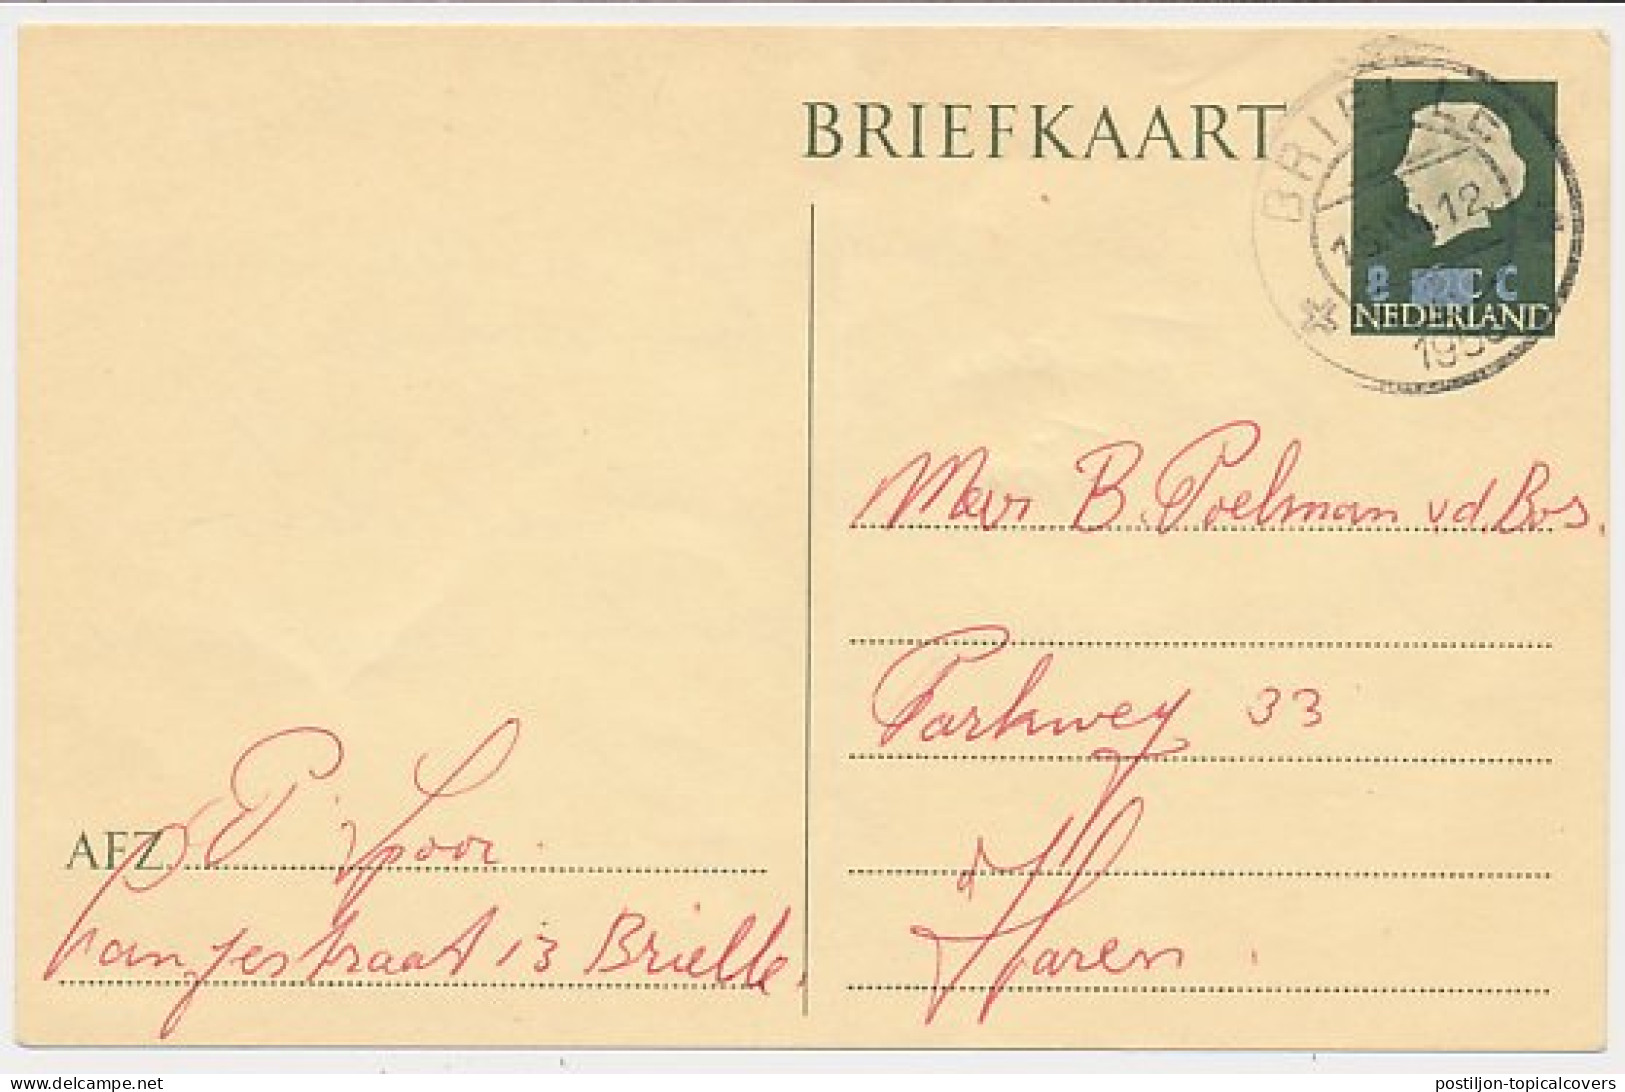 Briefkaart G. 324 Brielle - Haren 1958 - Entiers Postaux